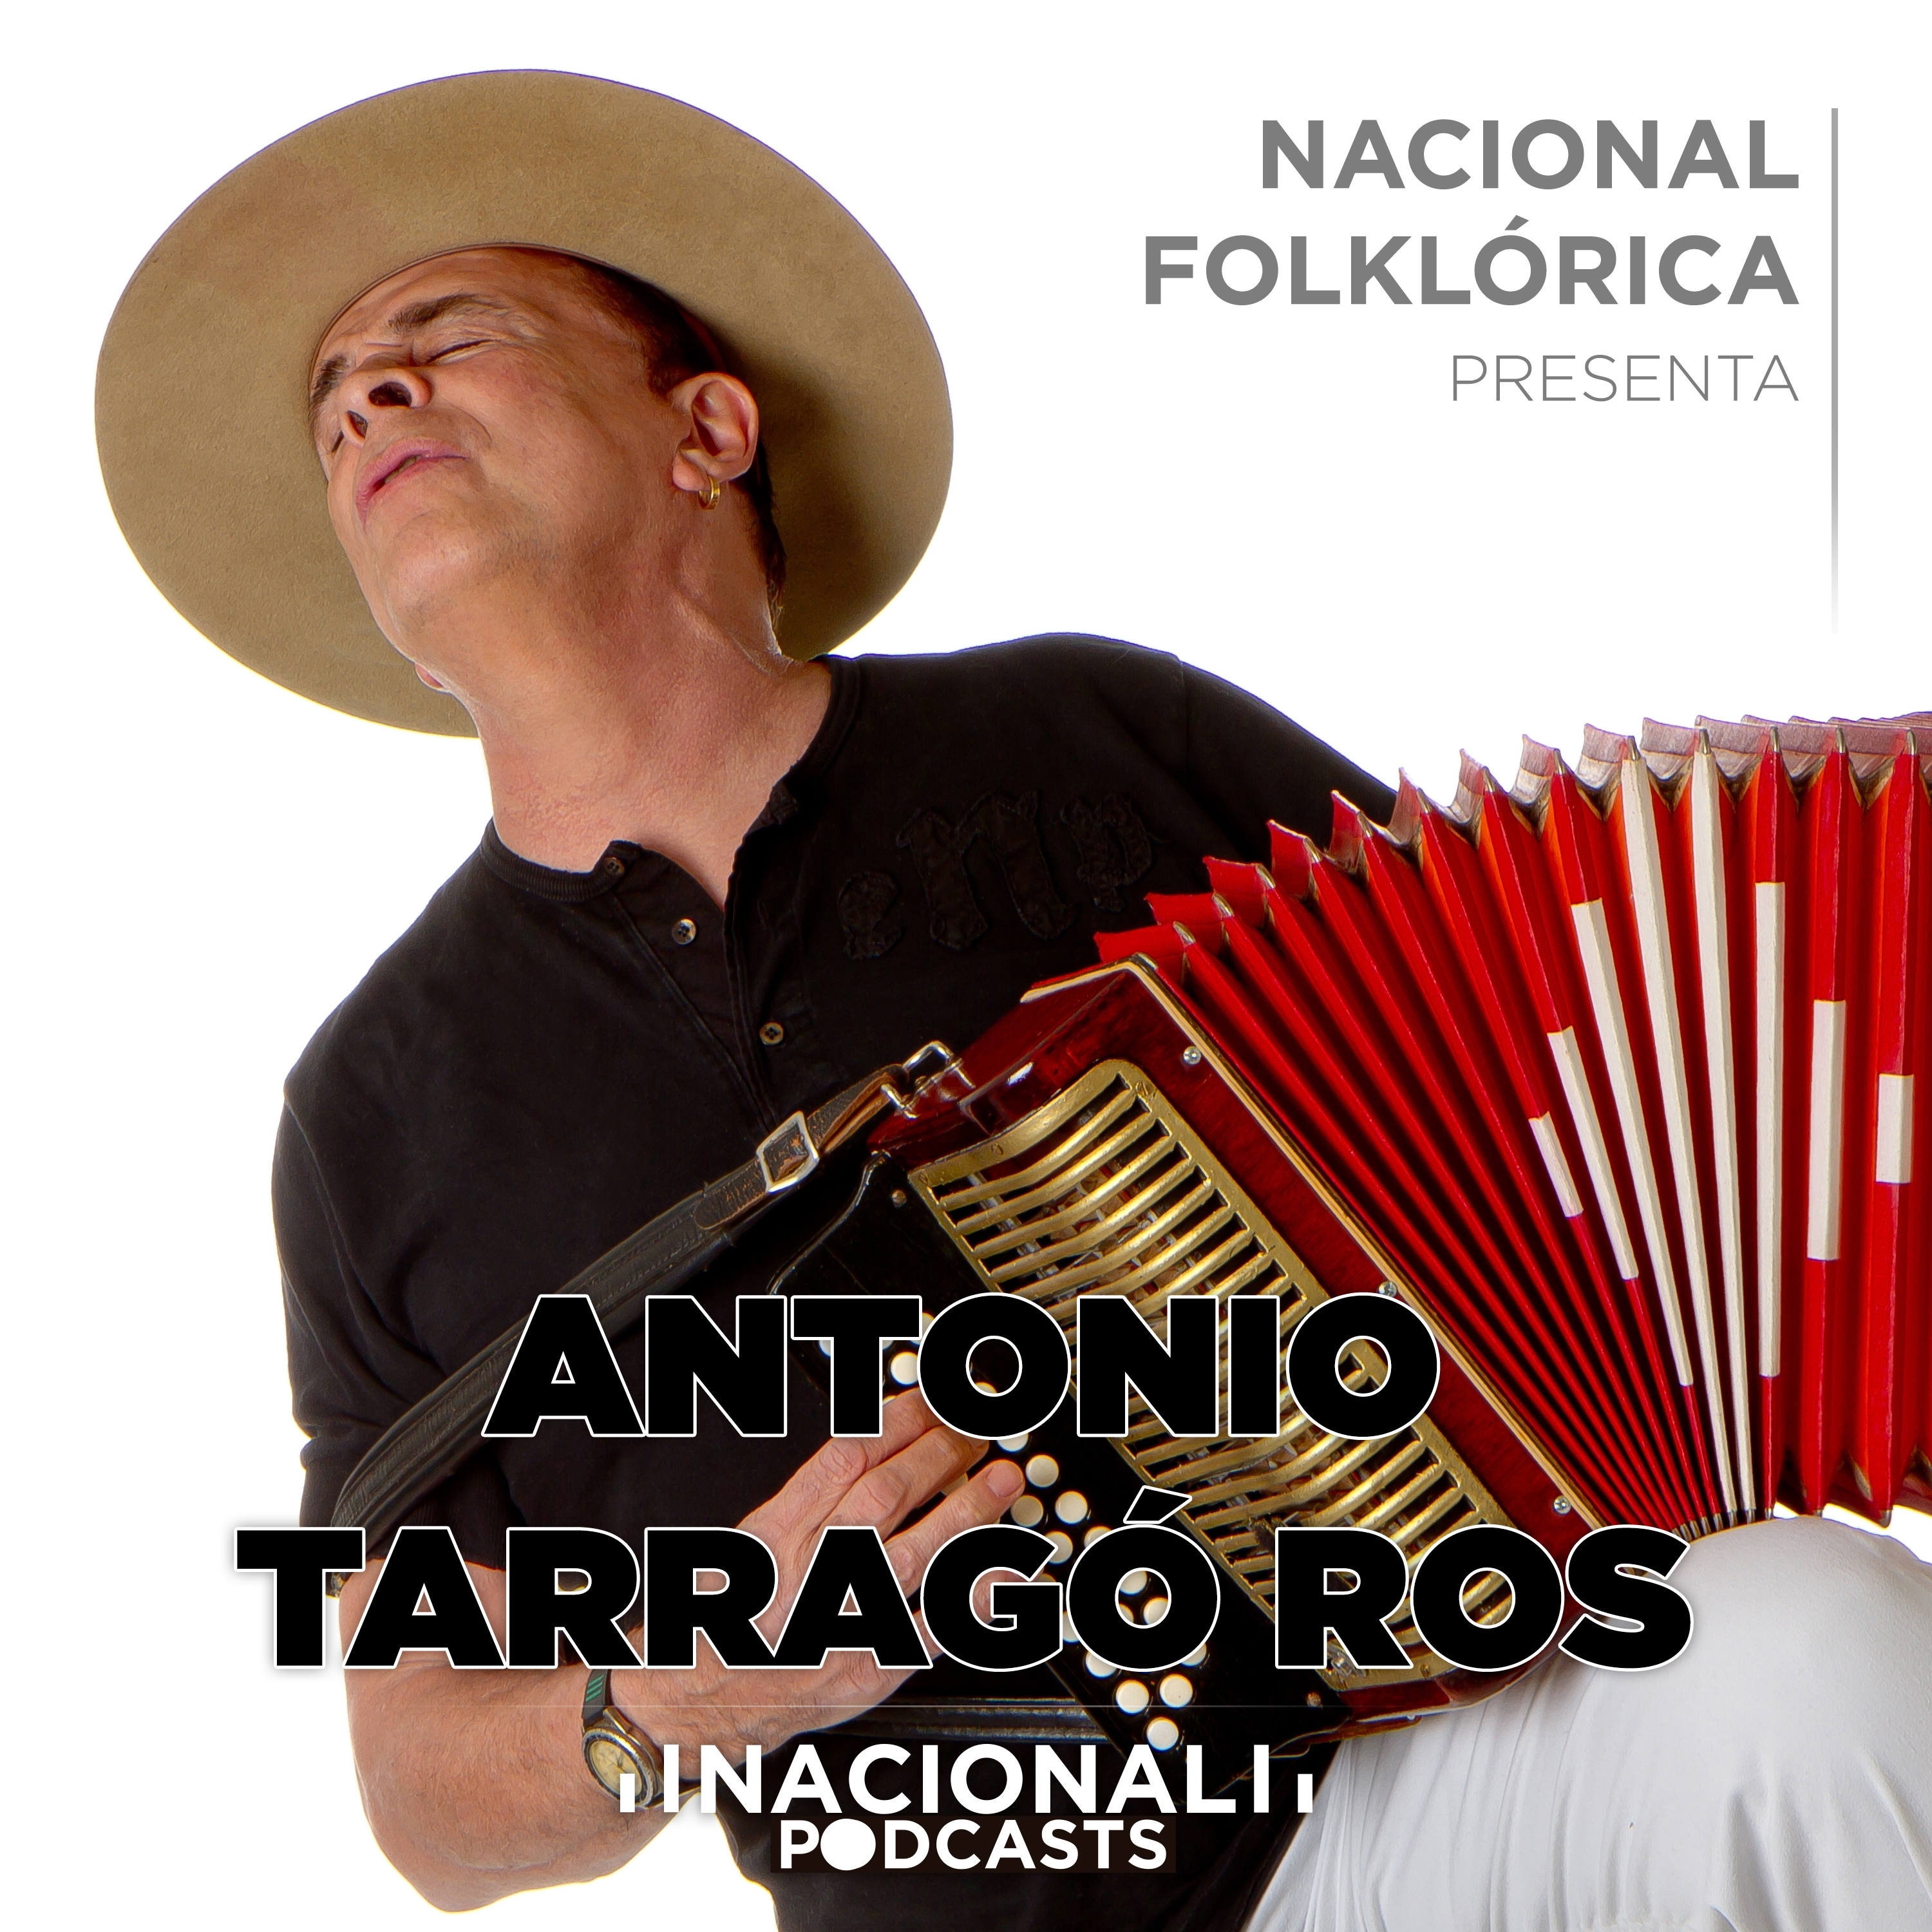 Nacional Folklórica presenta a Antonio Tarragó Ros